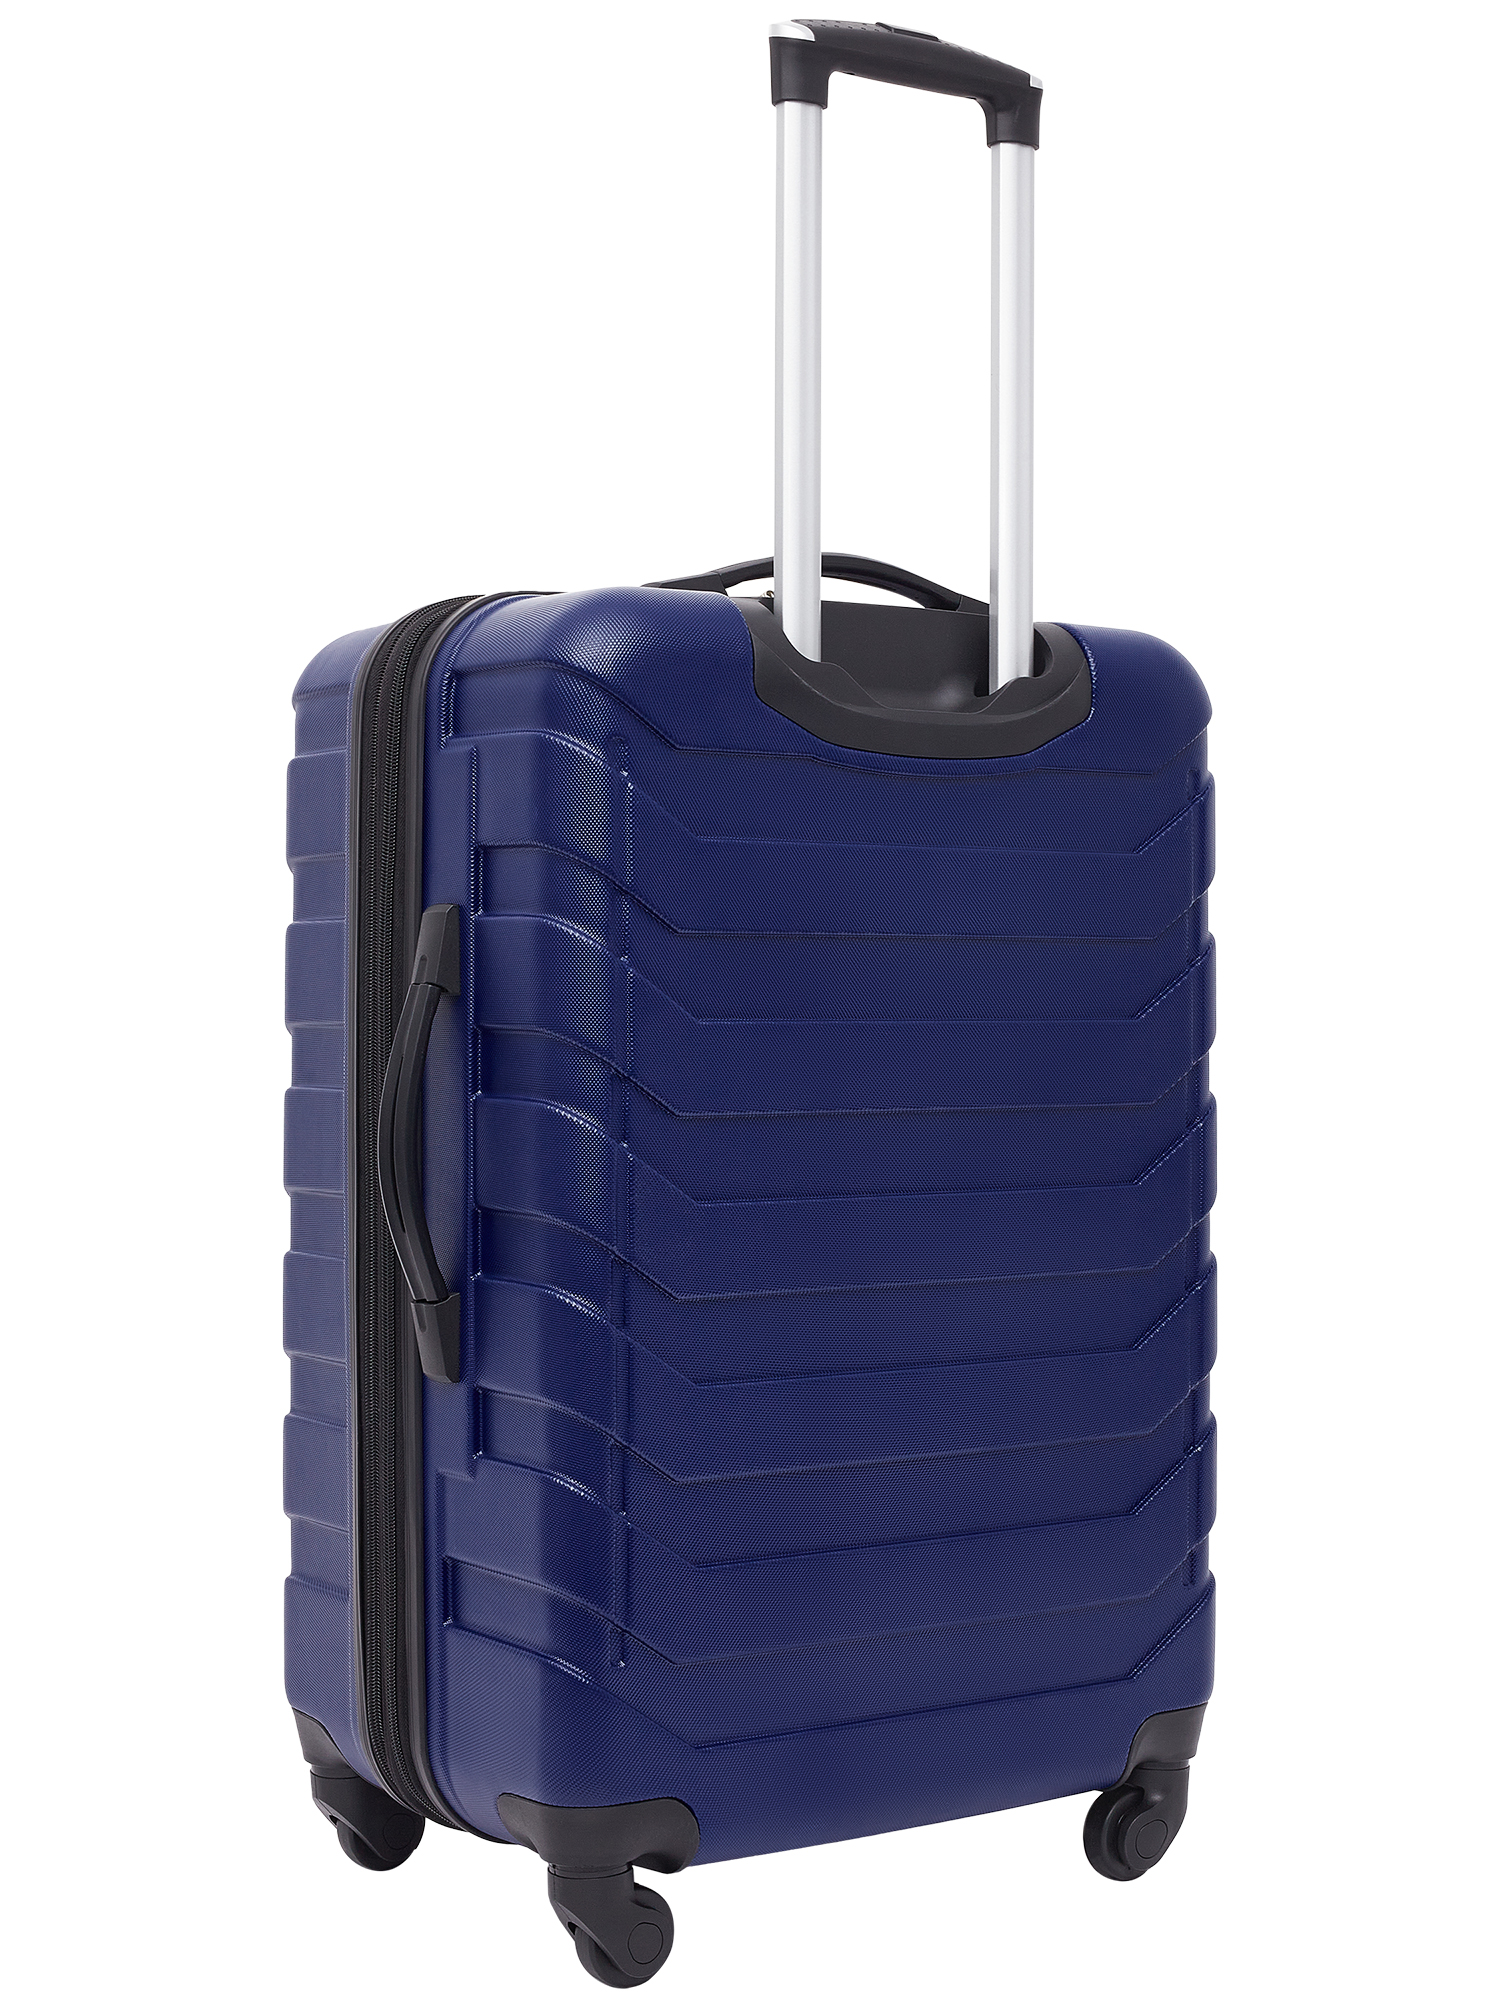 Wrangler 4 Piece Rolling Hardside Luggage Set, Blue - image 4 of 9